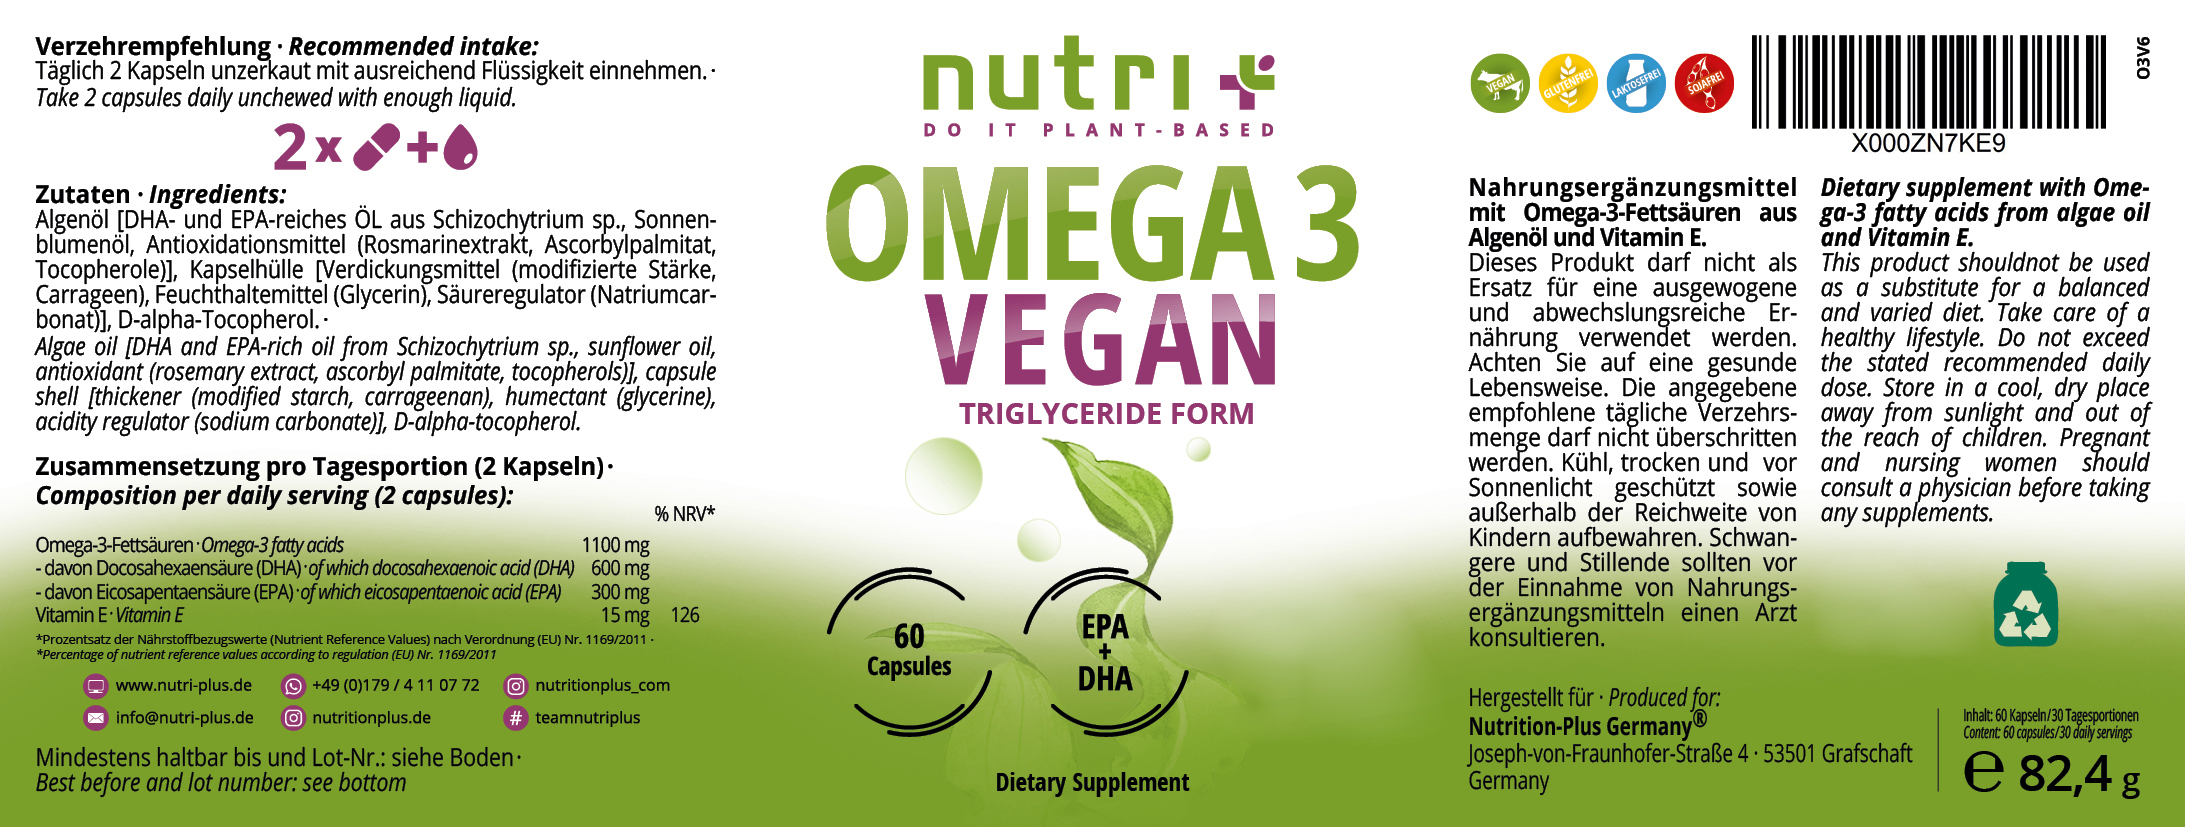 Omega 3 Vegan - mit EPA & DHA